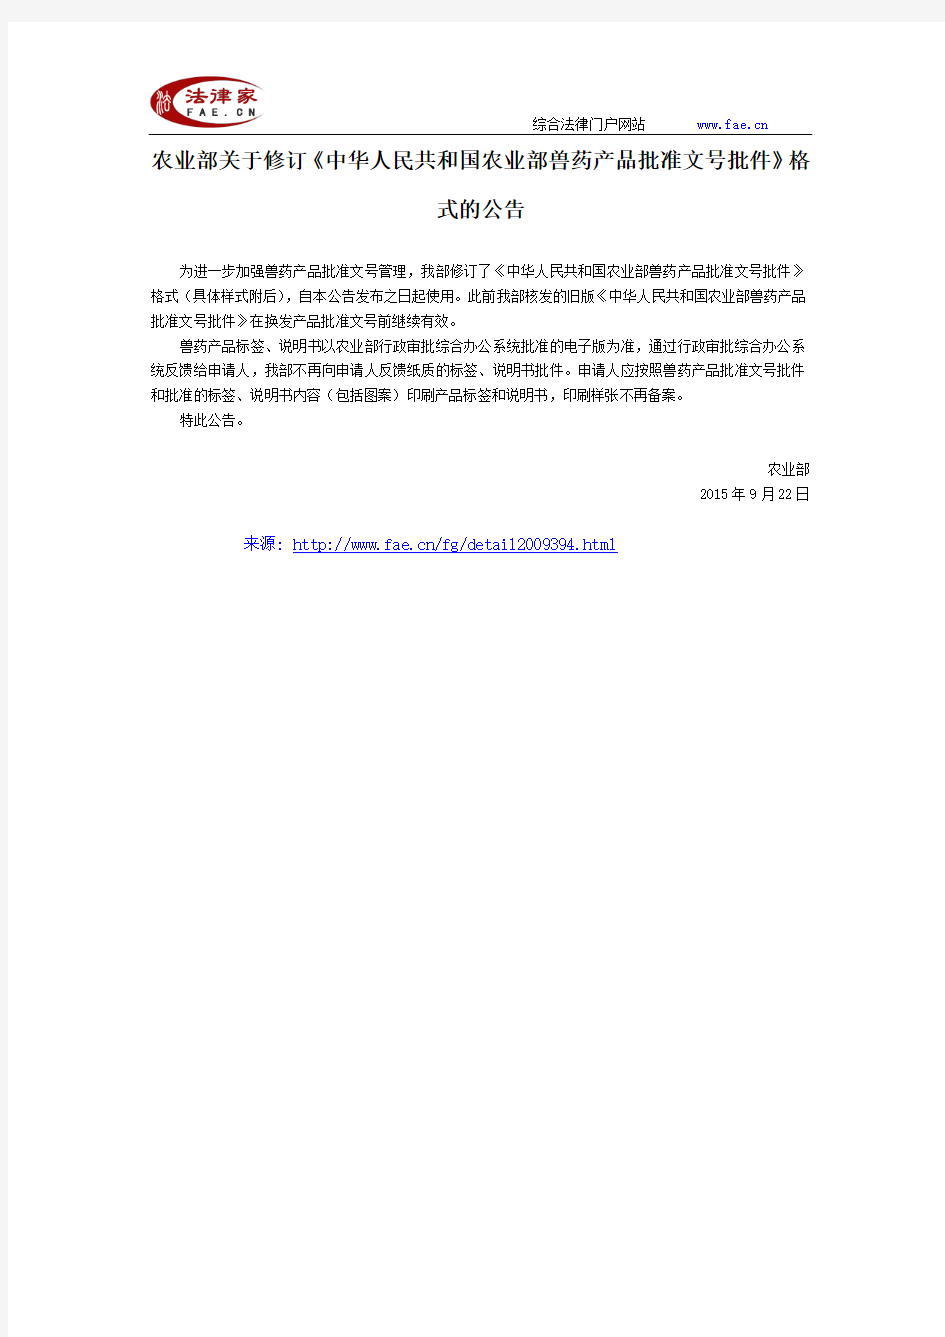 农业部关于修订《中华人民共和国农业部兽药产品批准文号批件》格式的公告-国家规范性文件